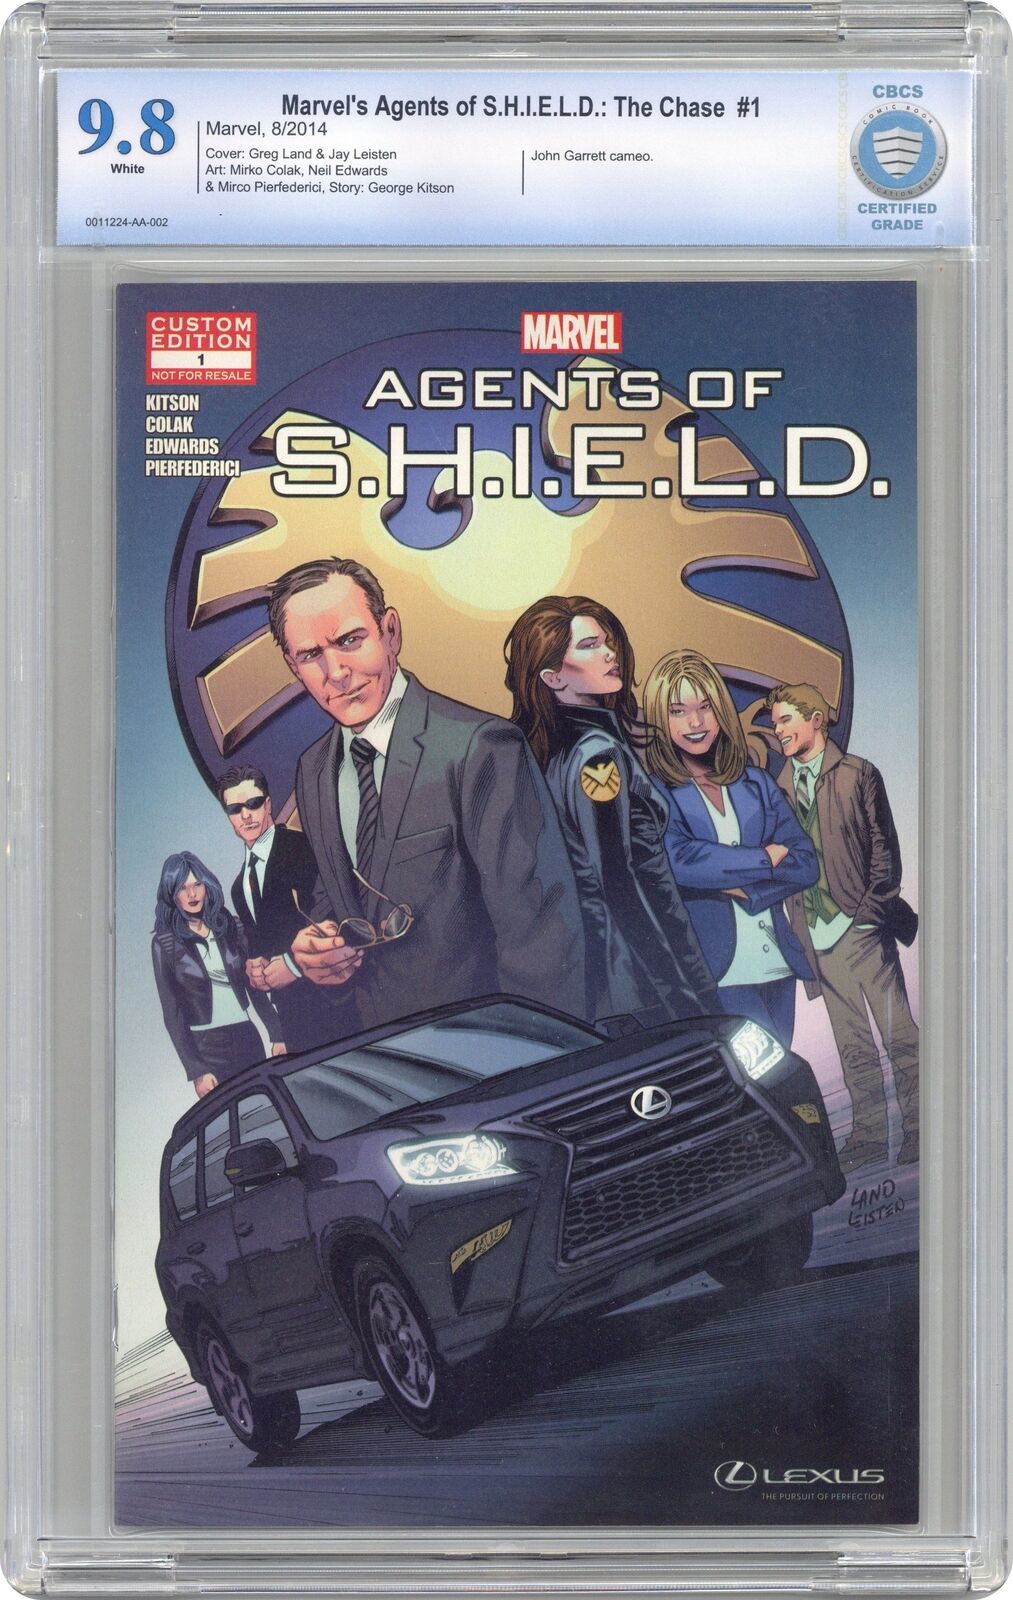 Marvel's Agents of S.H.I.E.L.D The Chase #1 CBCS 9.8 2014 0011224-AA-002